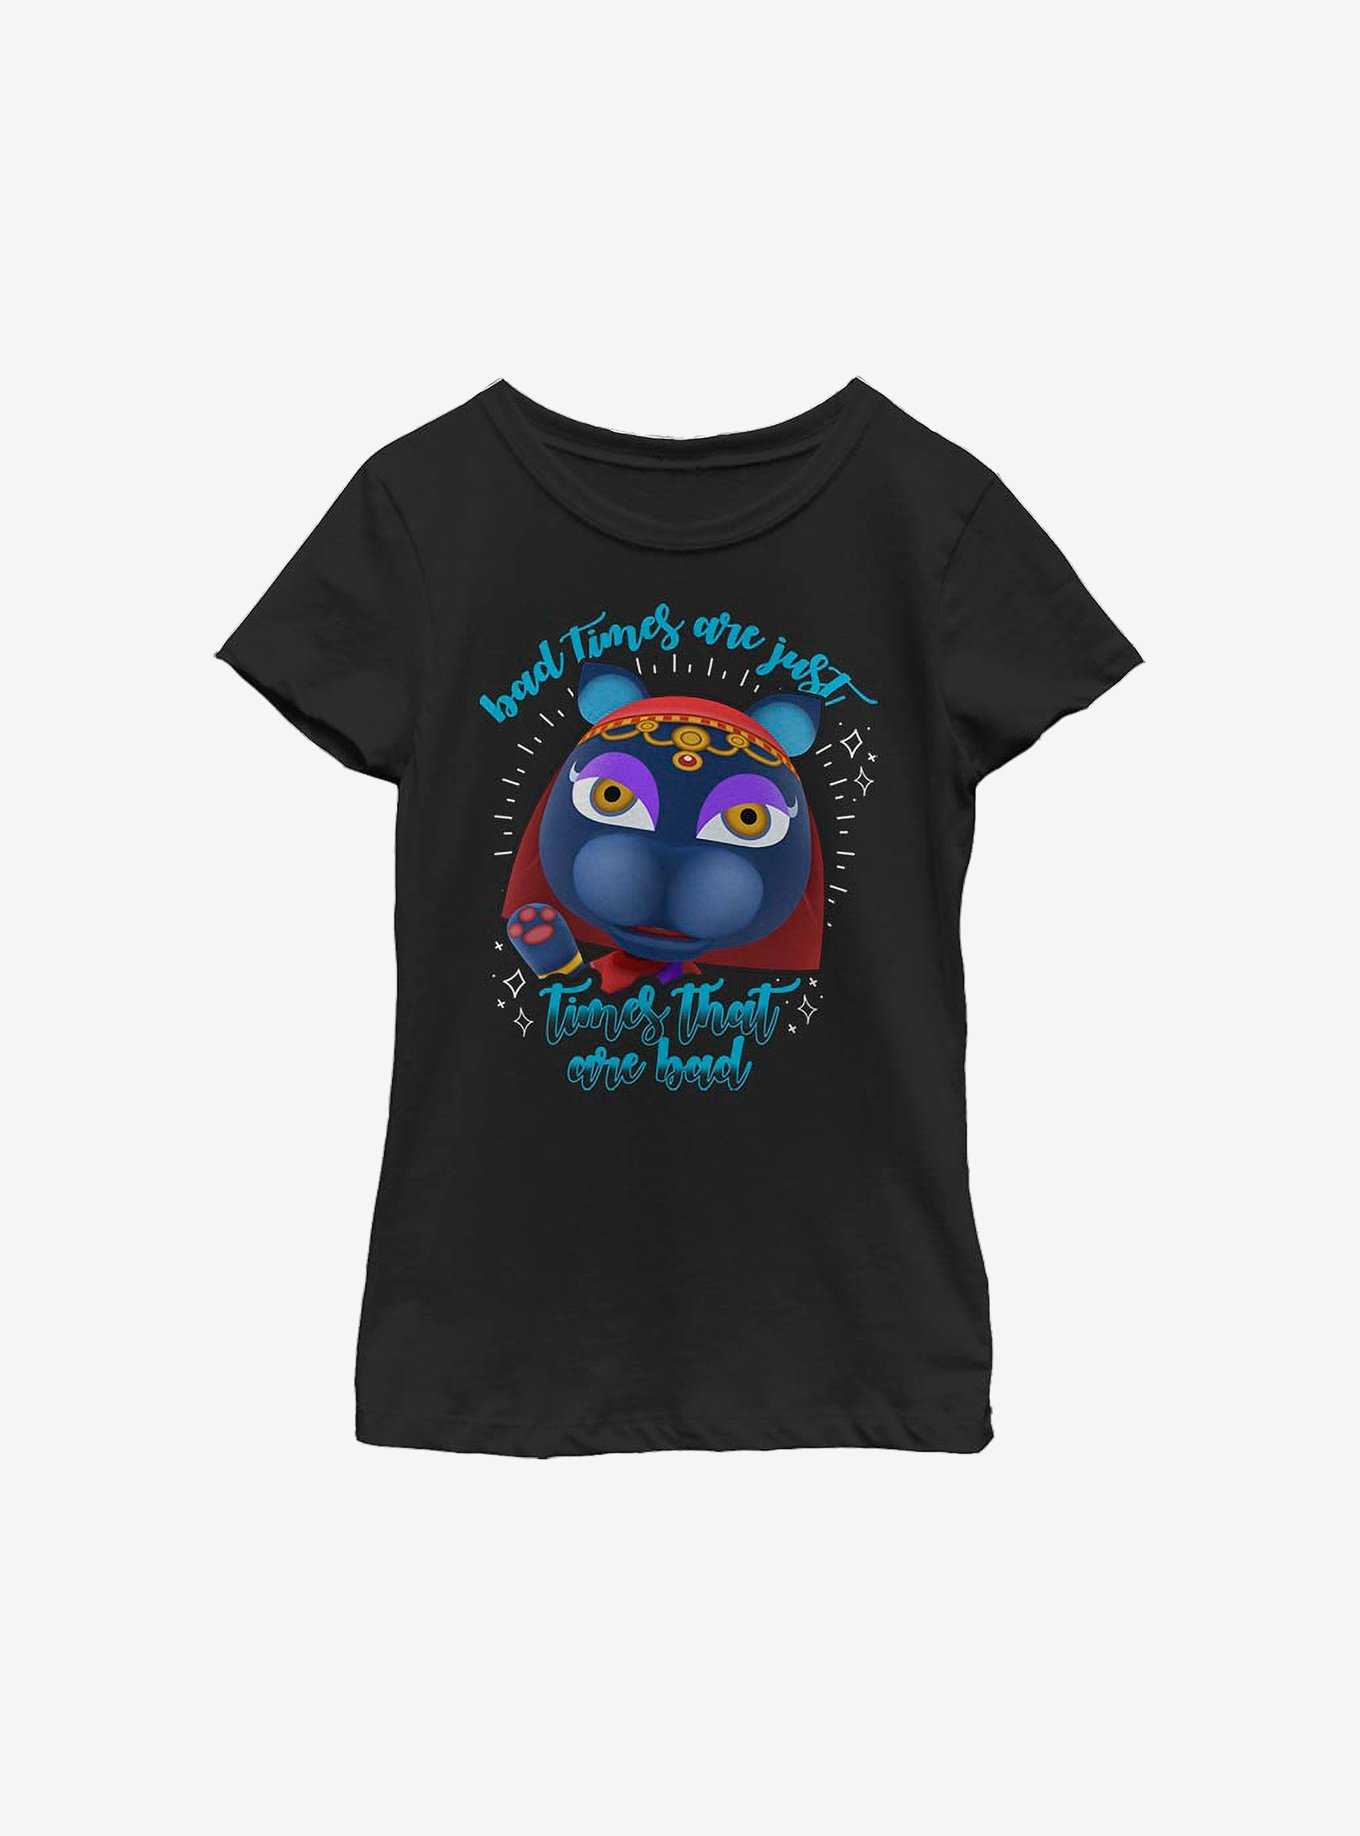 Animal Crossing Katrina Bad Times Youth Girls T-Shirt, , hi-res